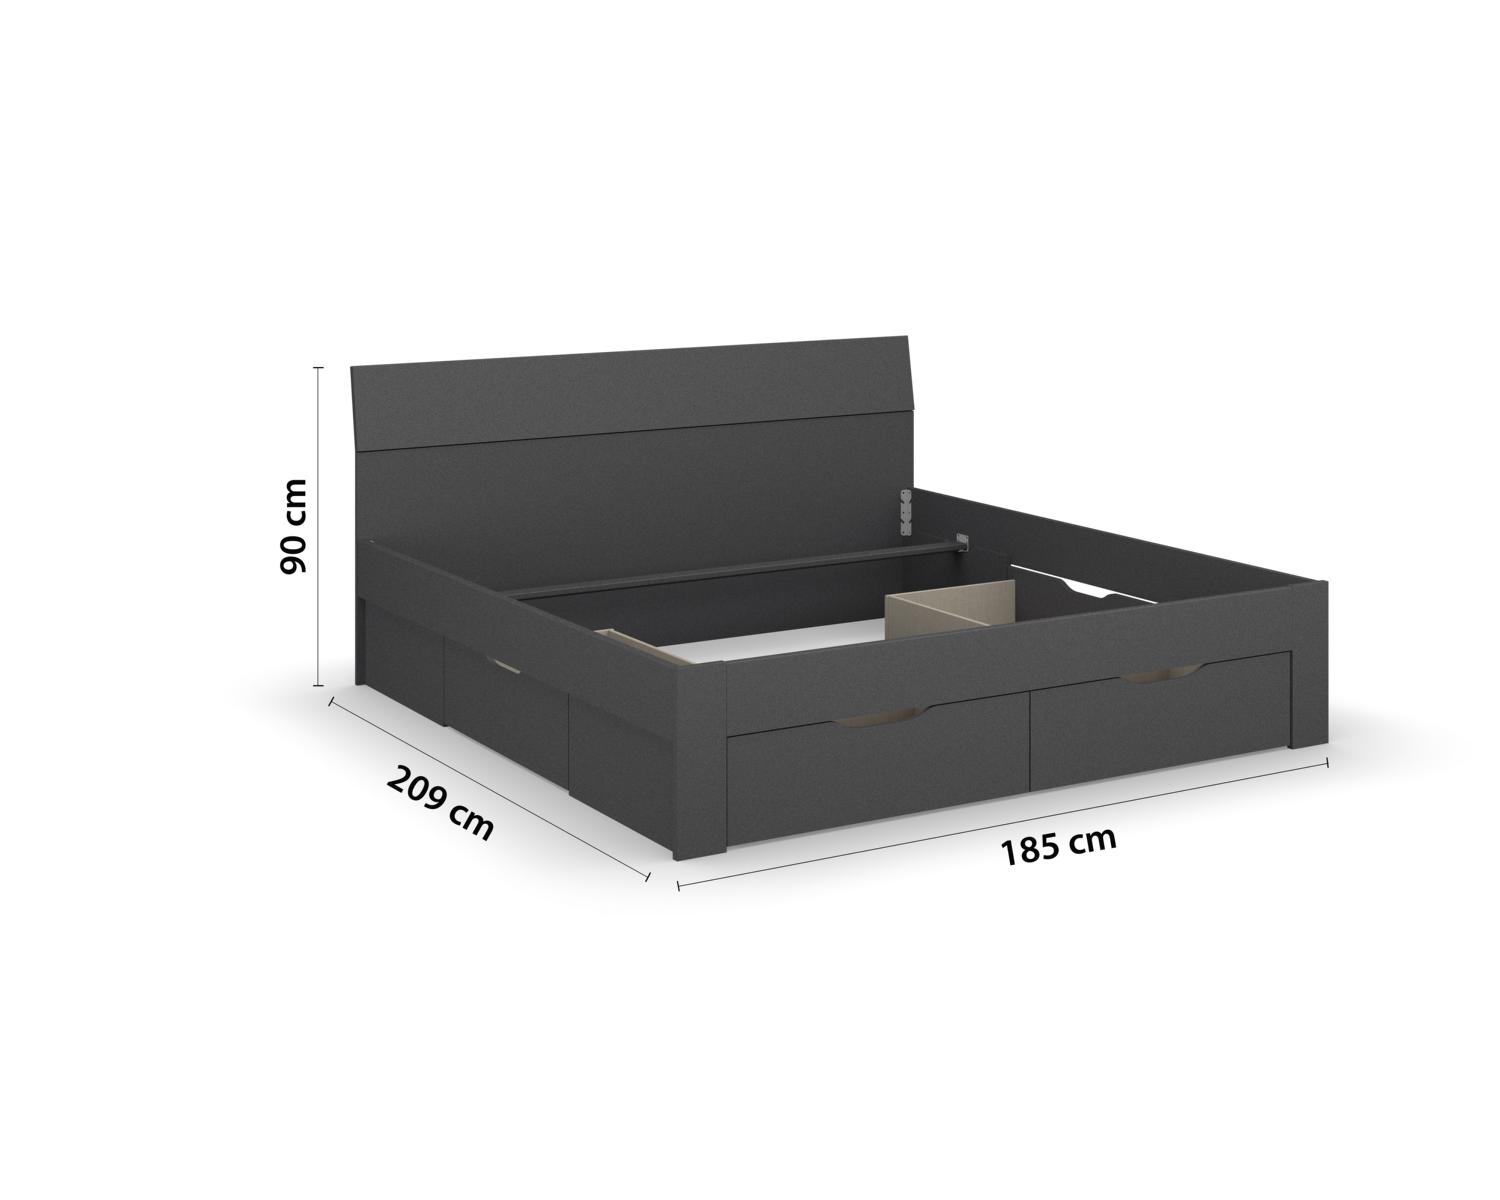 Rauch Bett Allrounder mit optionalem Bettkasten 180x200 cm